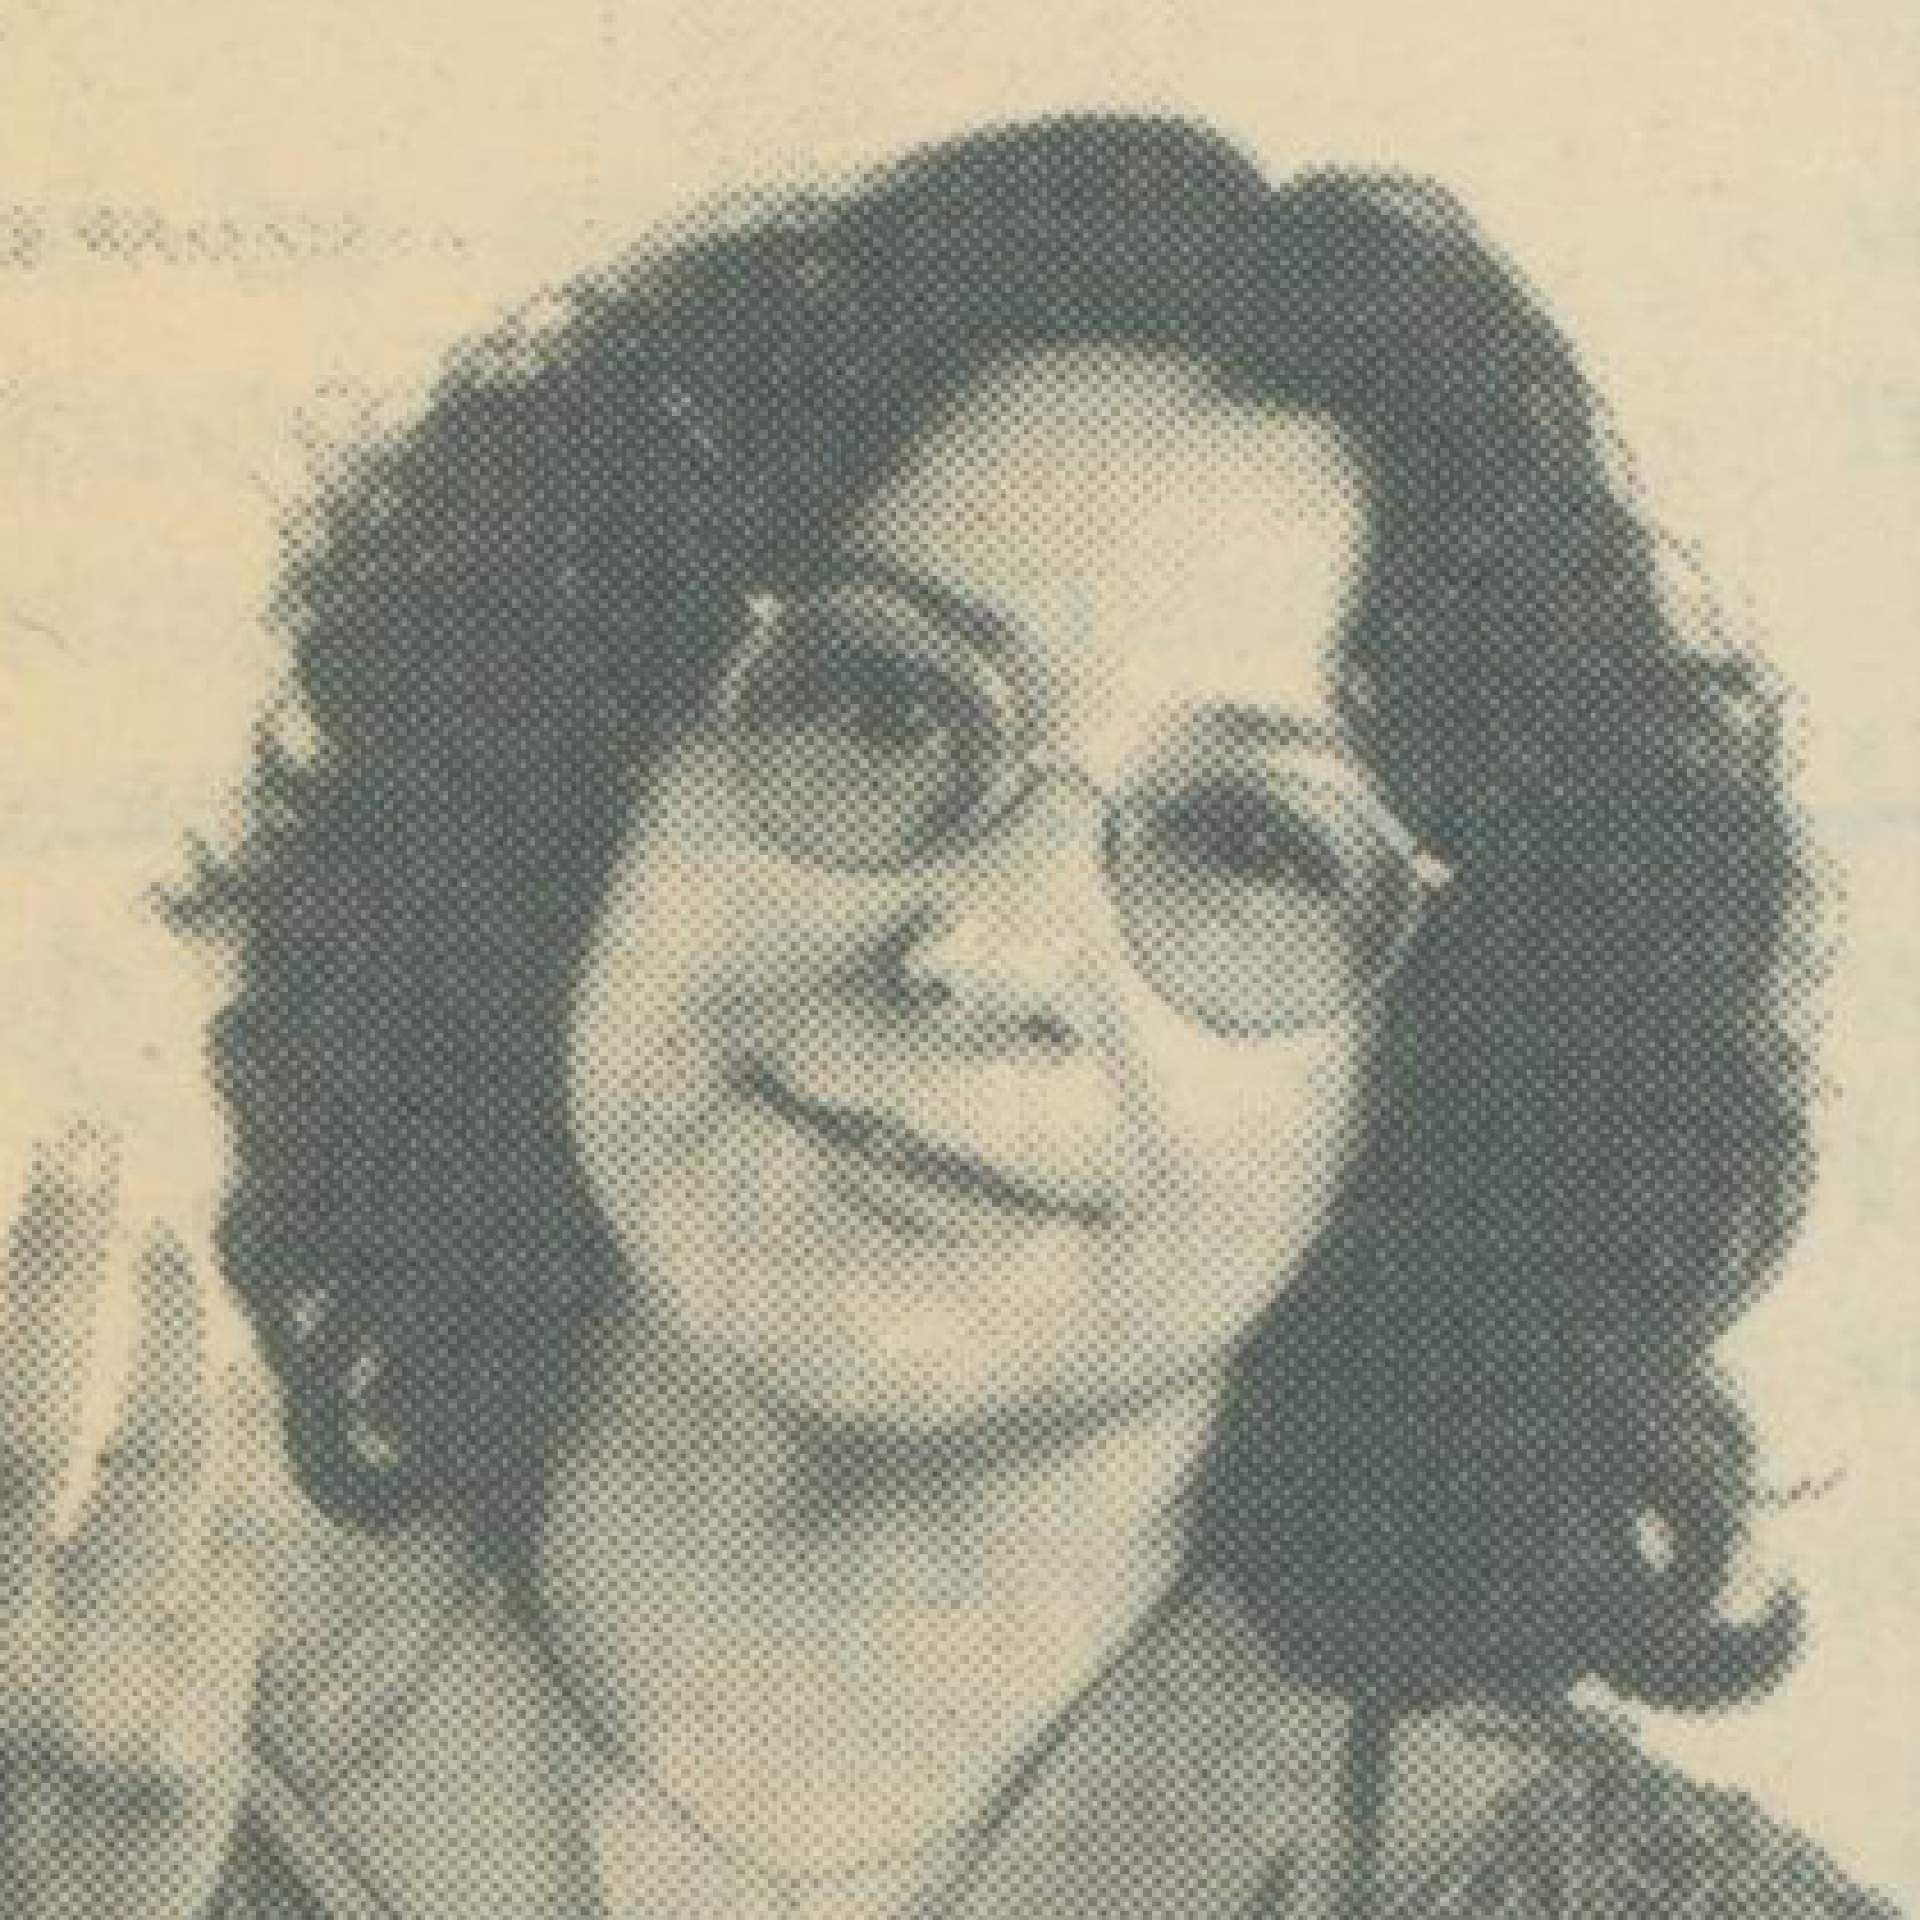 Ana Maria Hidalgo